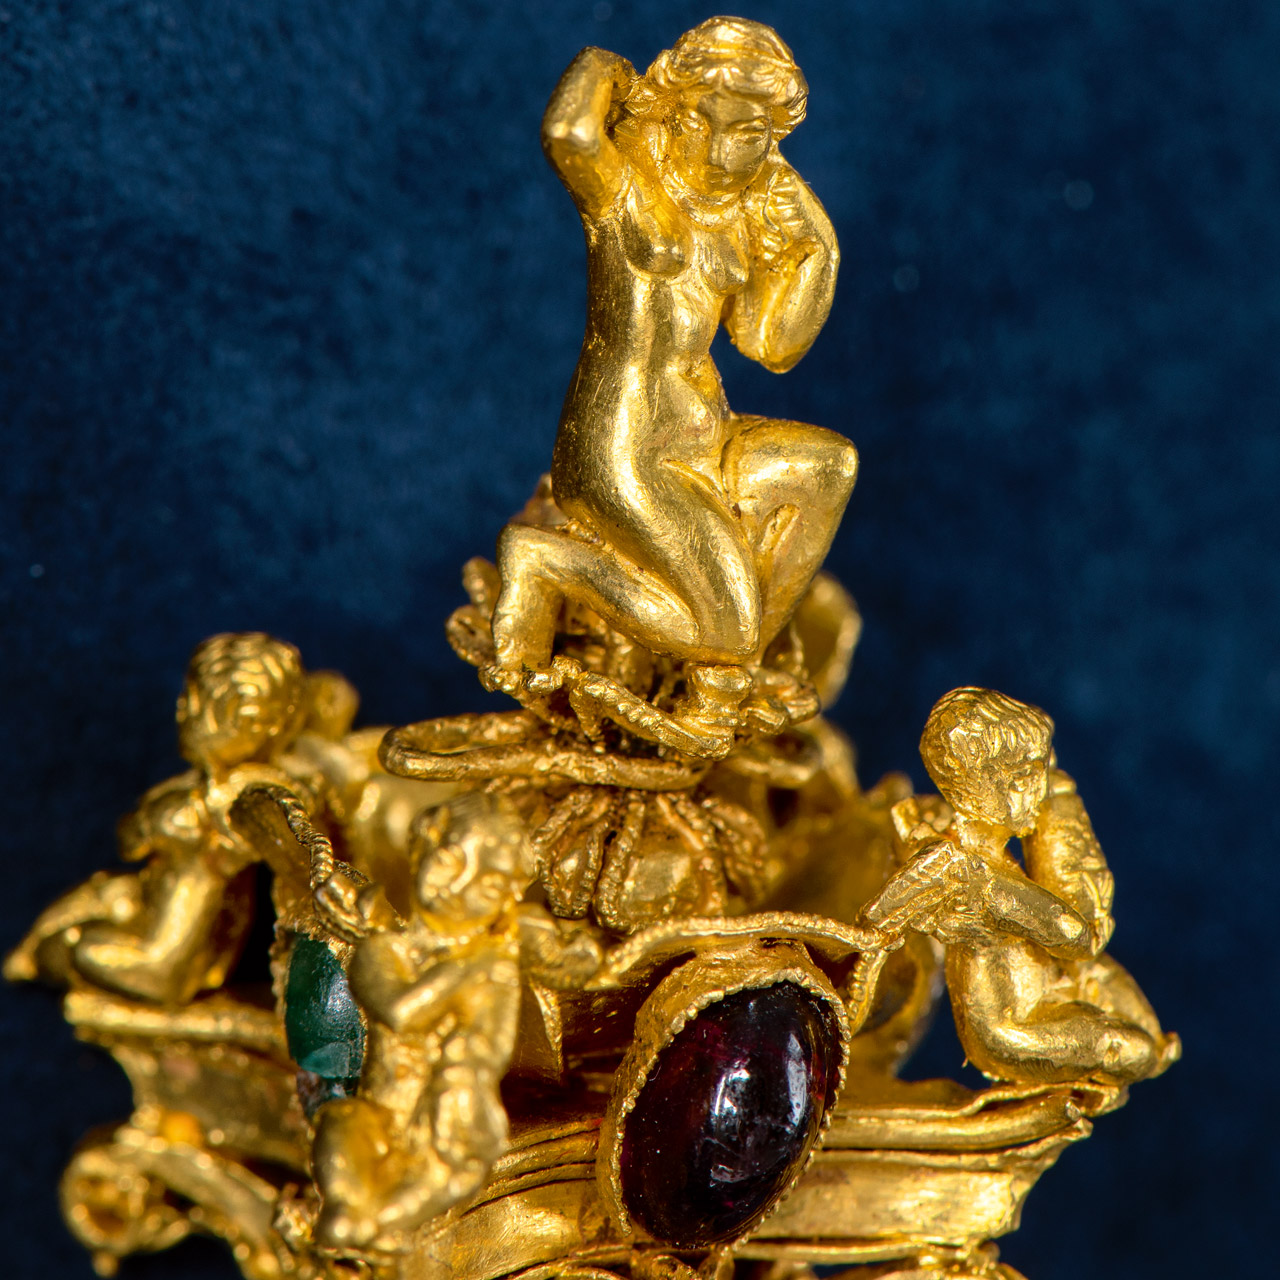 Χρυσή περόνη με στέλεχος σε μορφή κίονα που επιστέφεται από κορινθιακό κιονόκρανο.